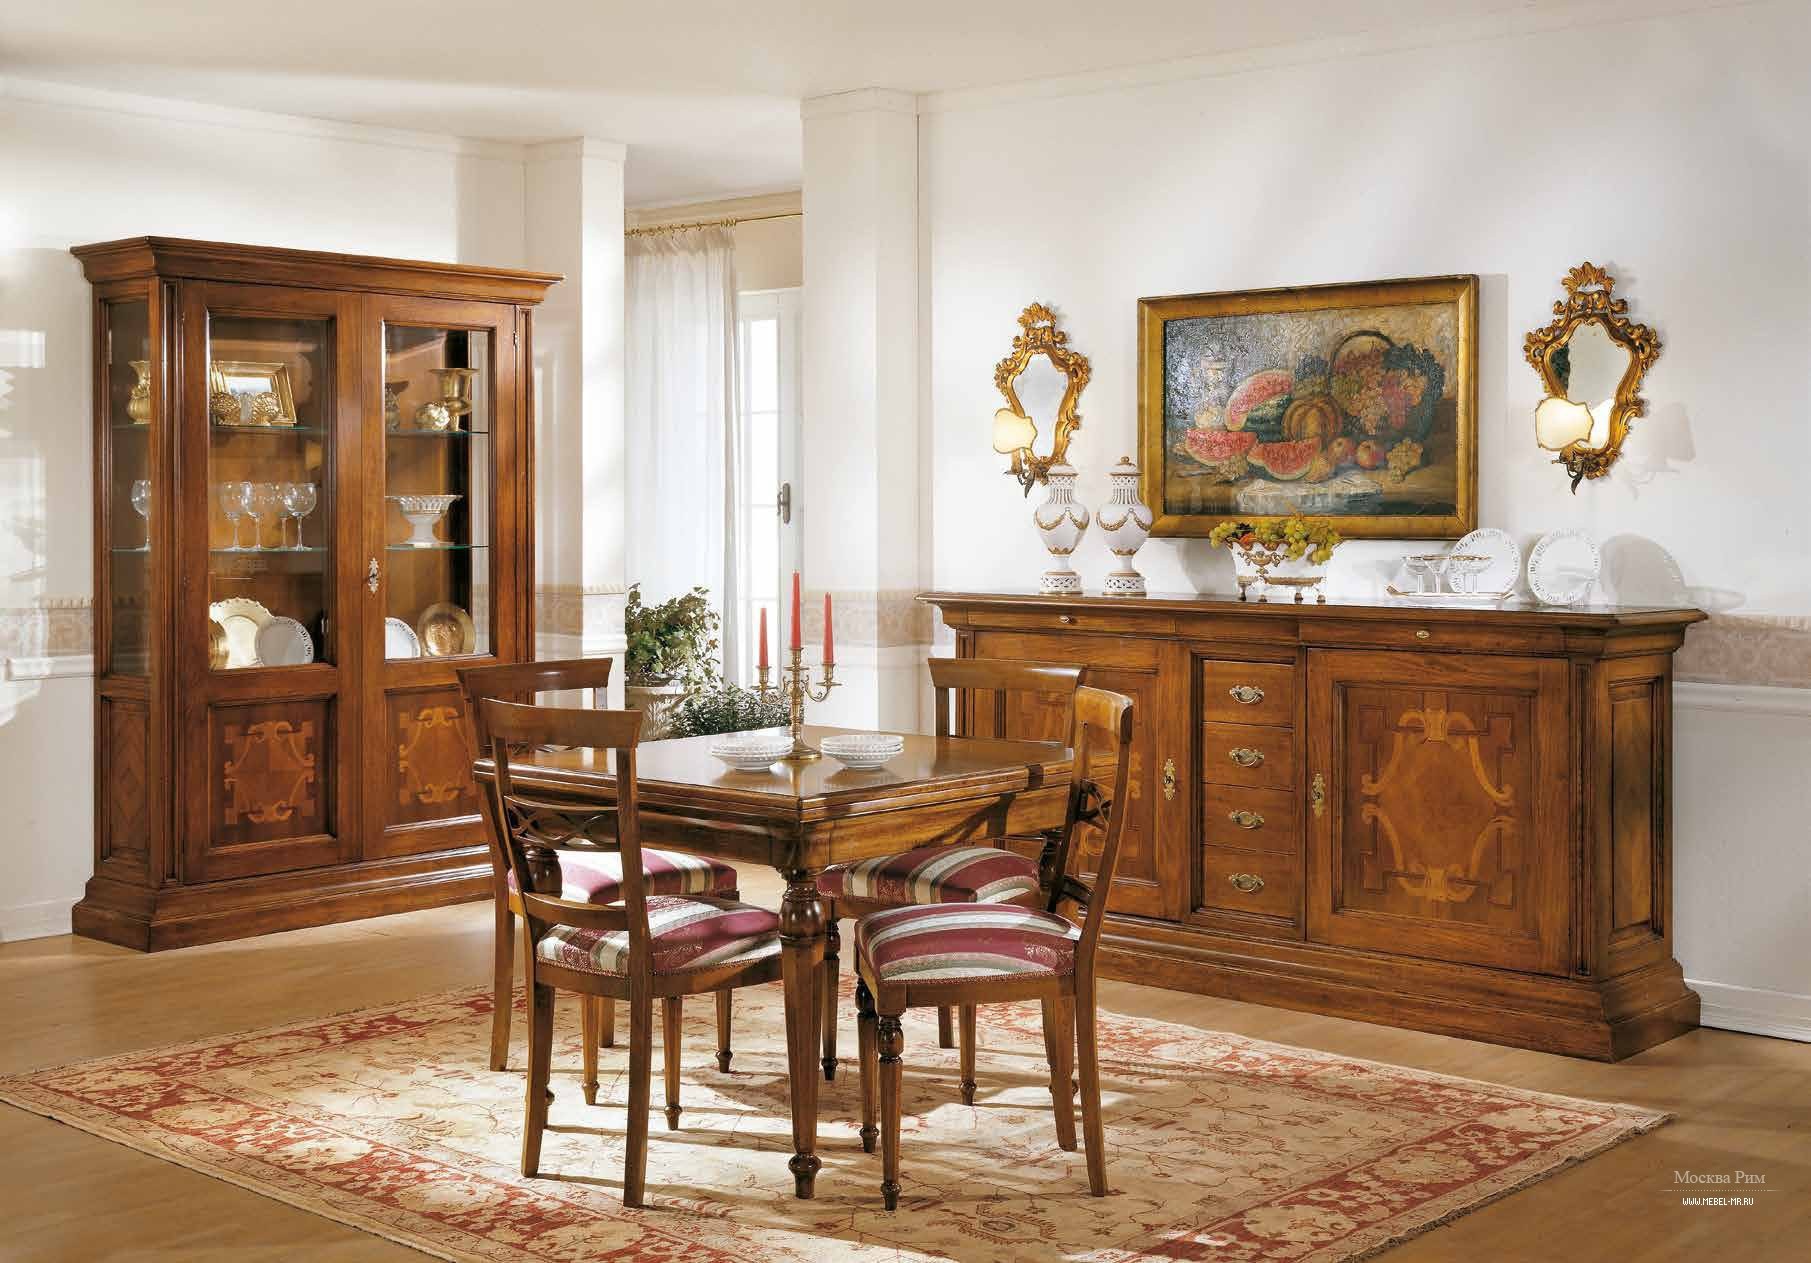 Сайт мебель италии. Classico mobili мебель. Итальянская мебель лакированная. Итальянский Гостиный гарнитур. Итальянская полированная мебель.